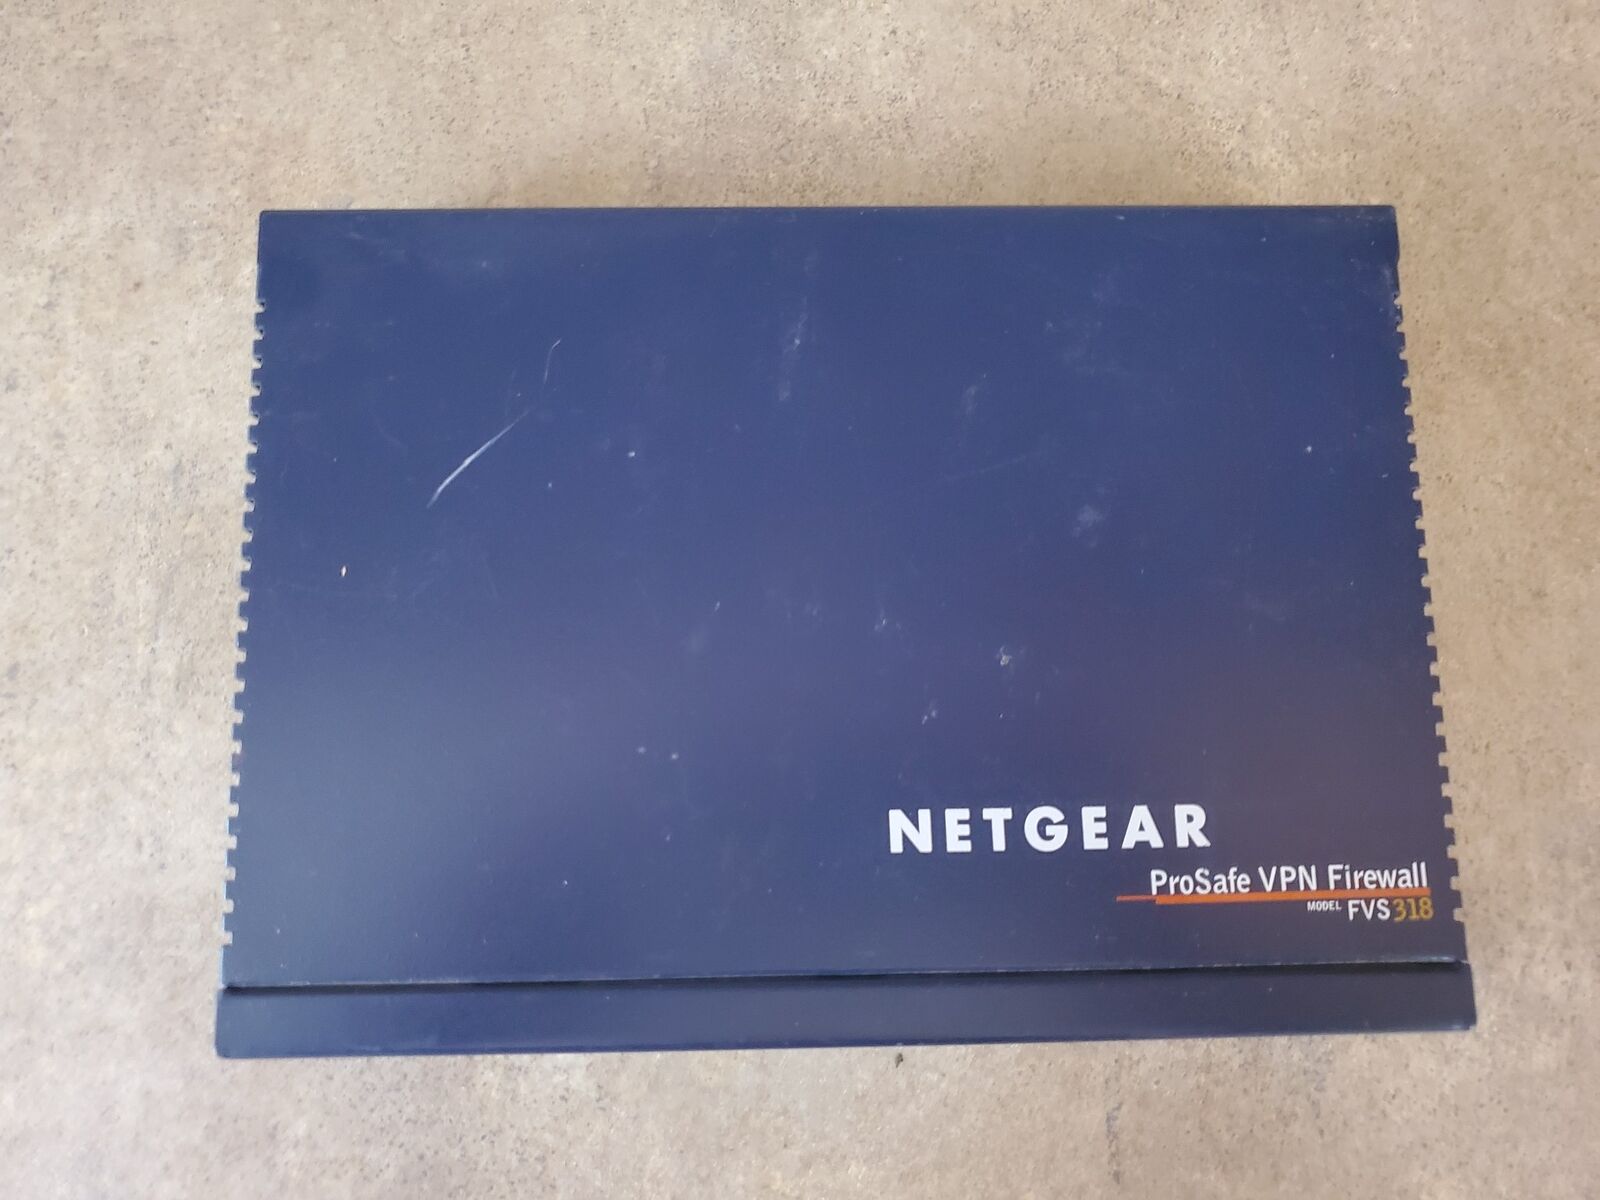 NETGEAR FVS318-100NAS PROSAFE 8-PORT GIGABIT VPN FIREWALL AA1-14